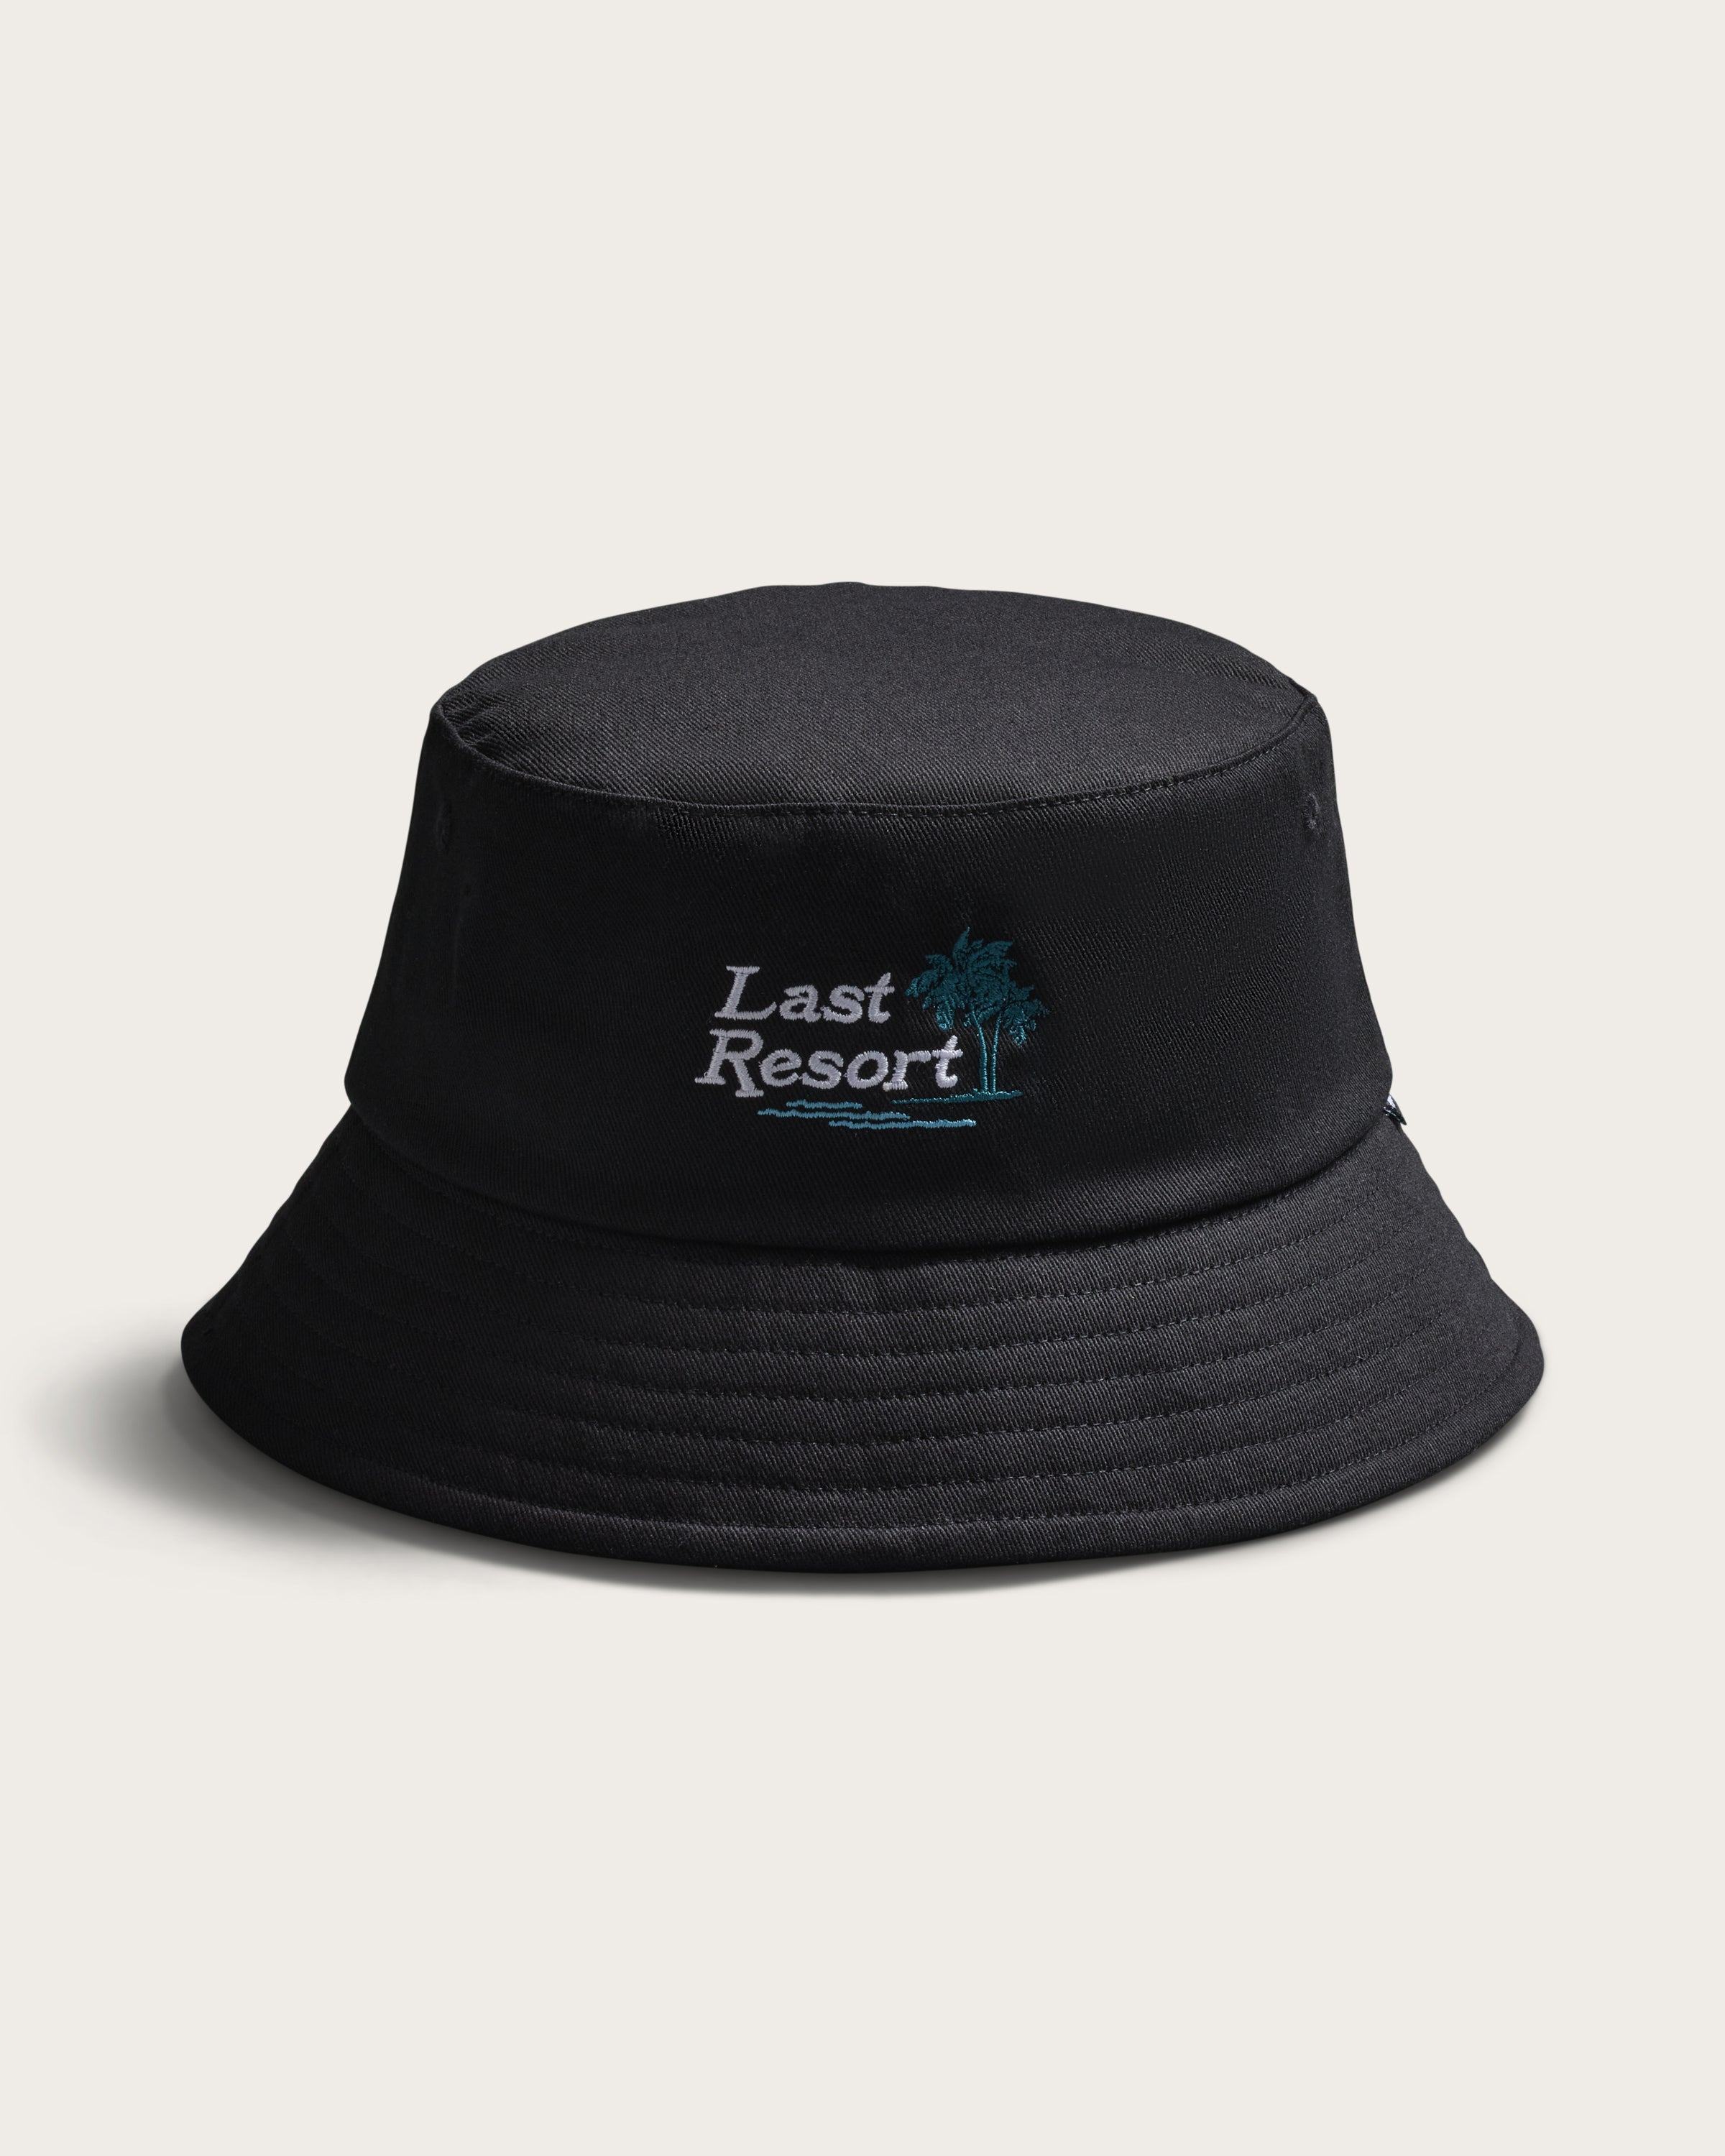 Hemlock Last Resort Cotton Bucket Hat in Black detailed view